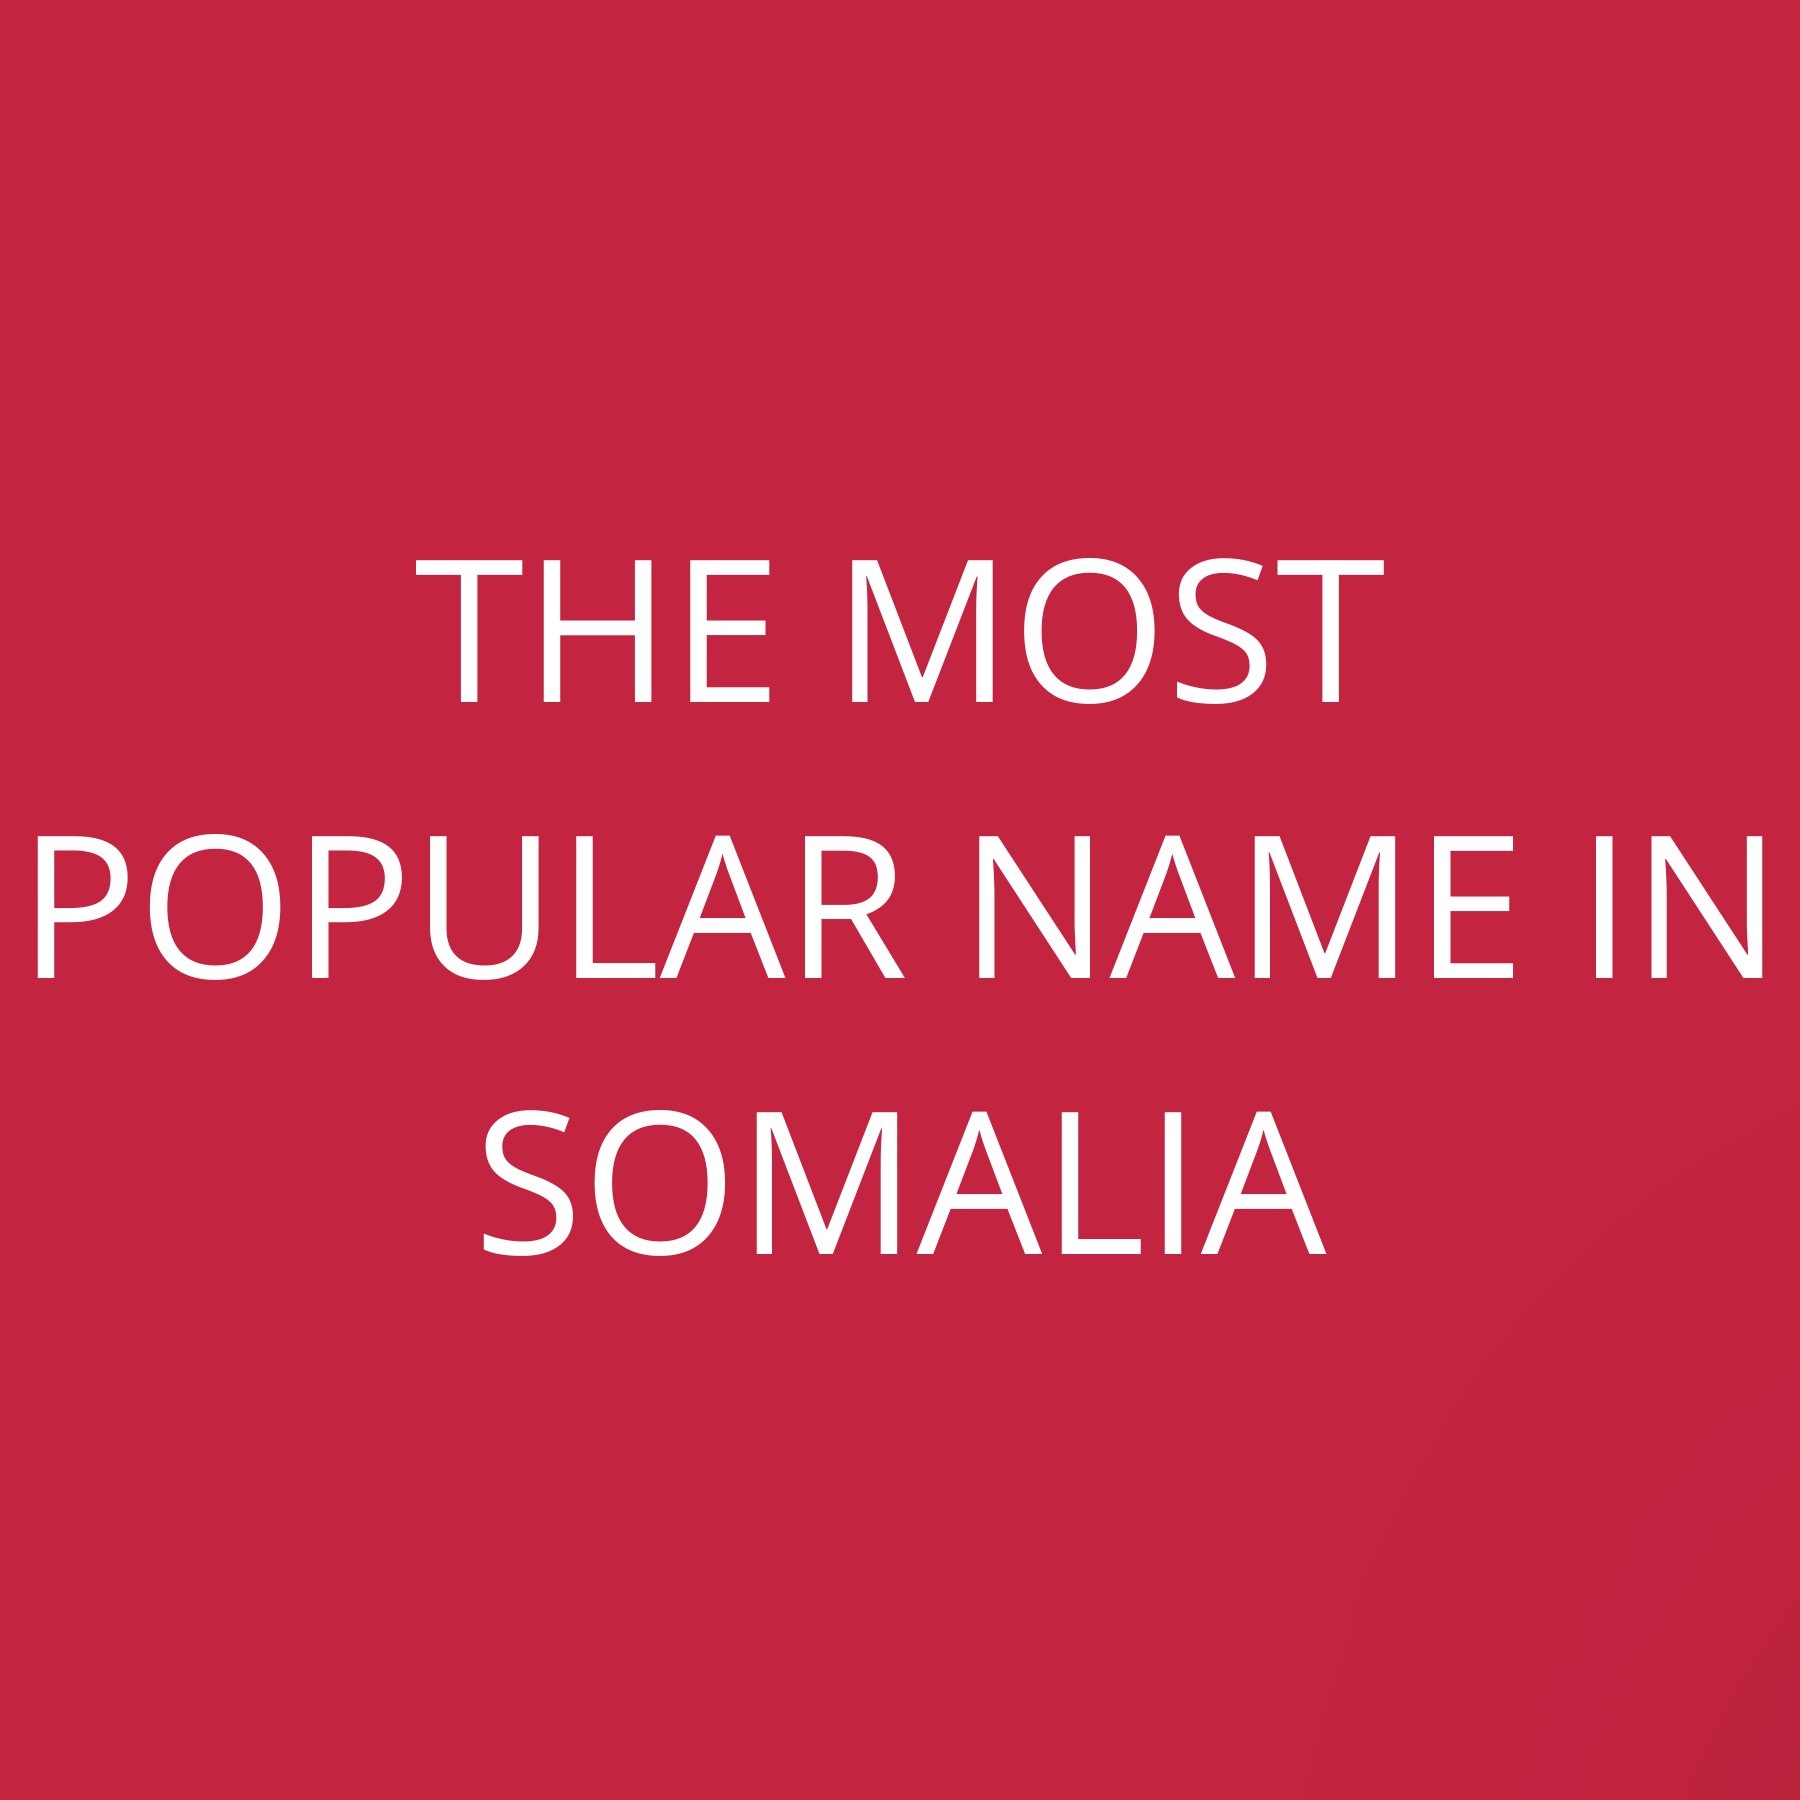 The most popular name in Somalia